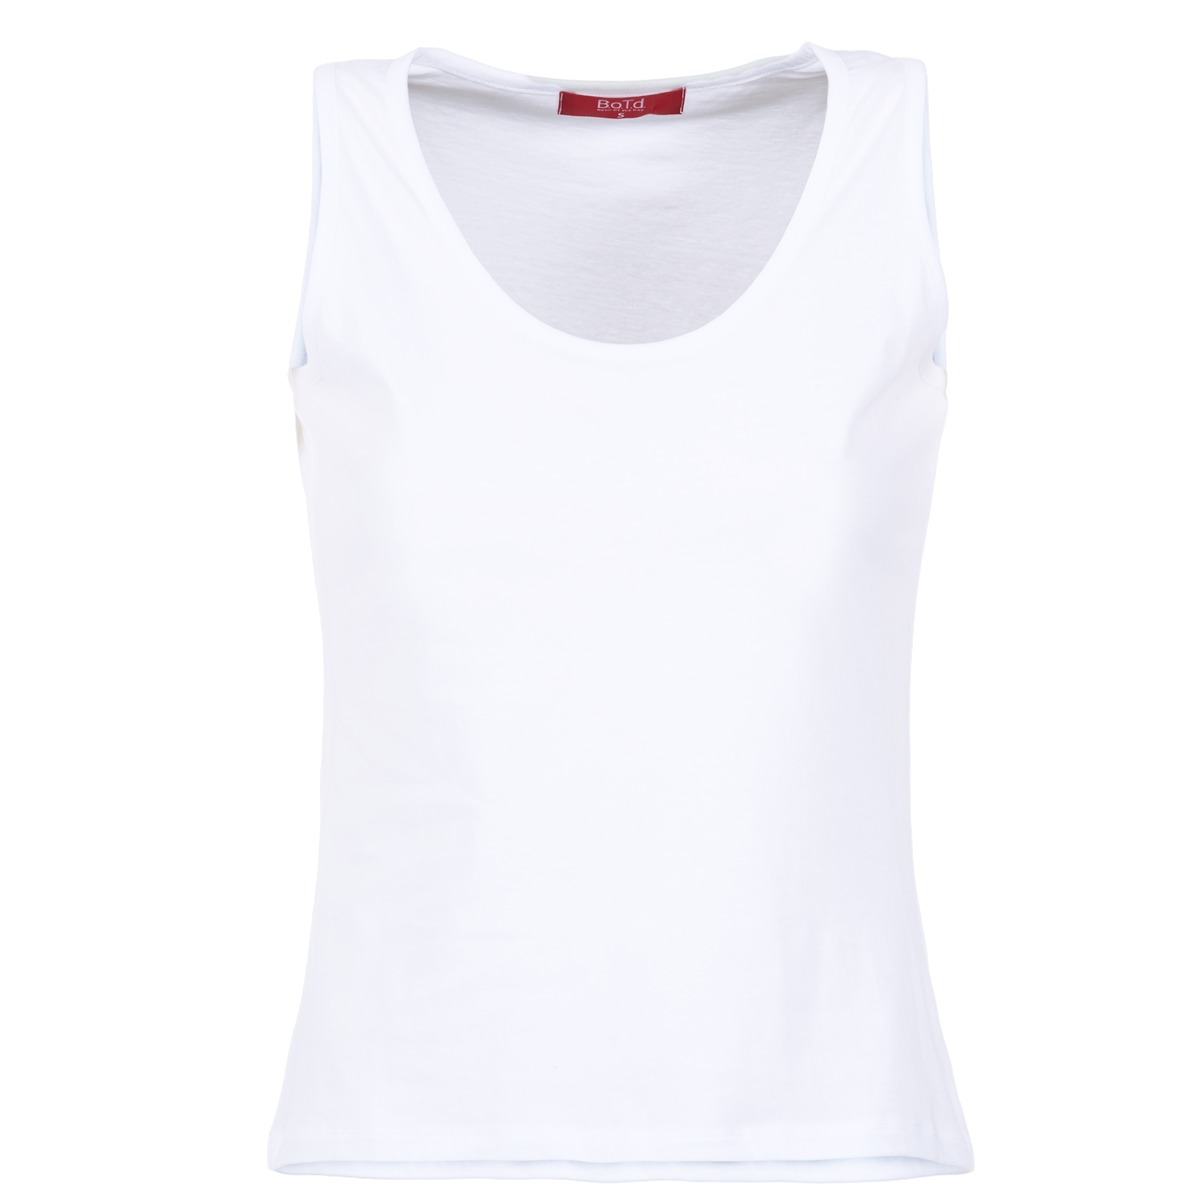 textil Dame Toppe / T-shirts uden ærmer BOTD EDEBALA Hvid